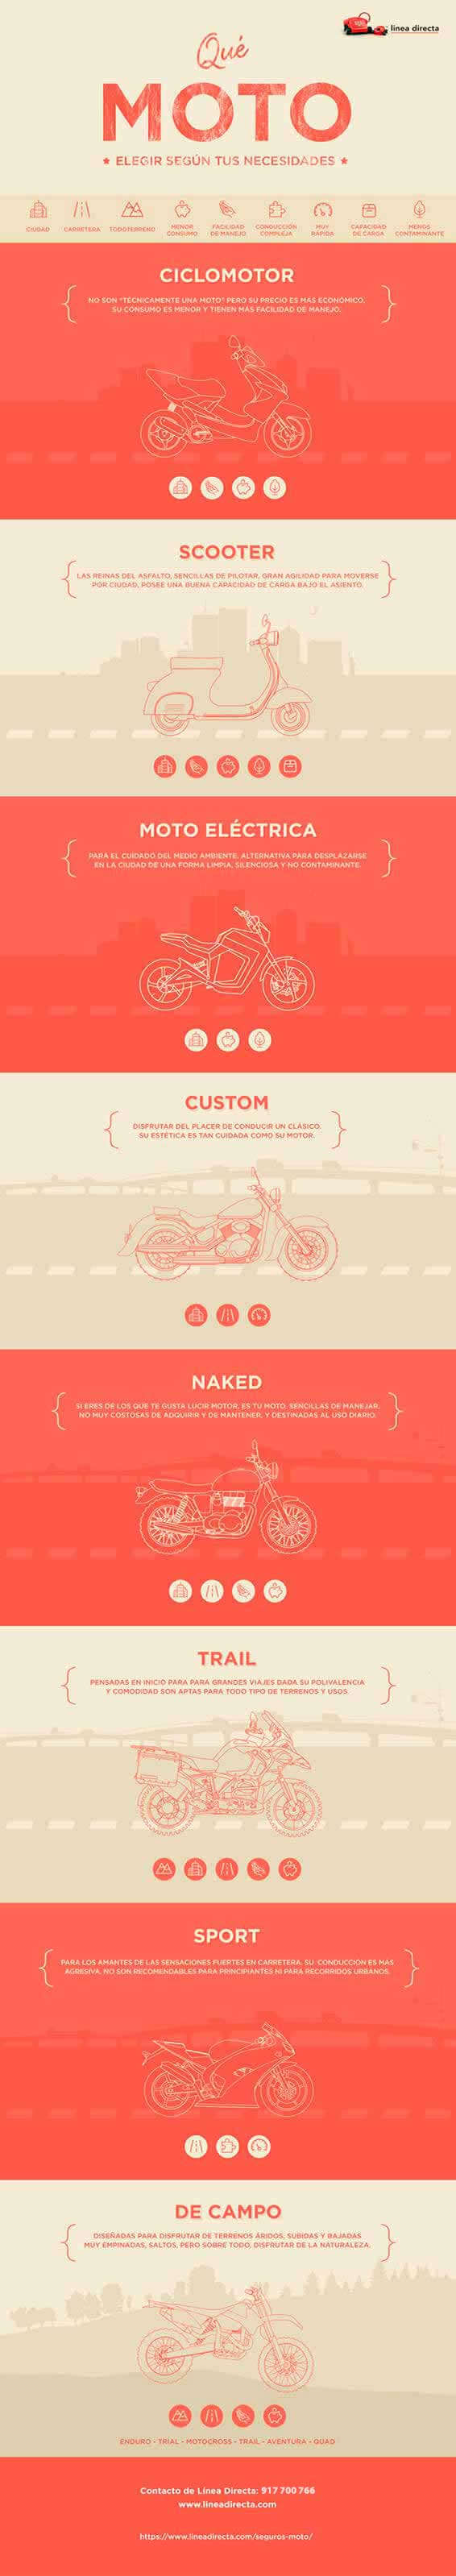 Qué moto elegir según tus necesidades